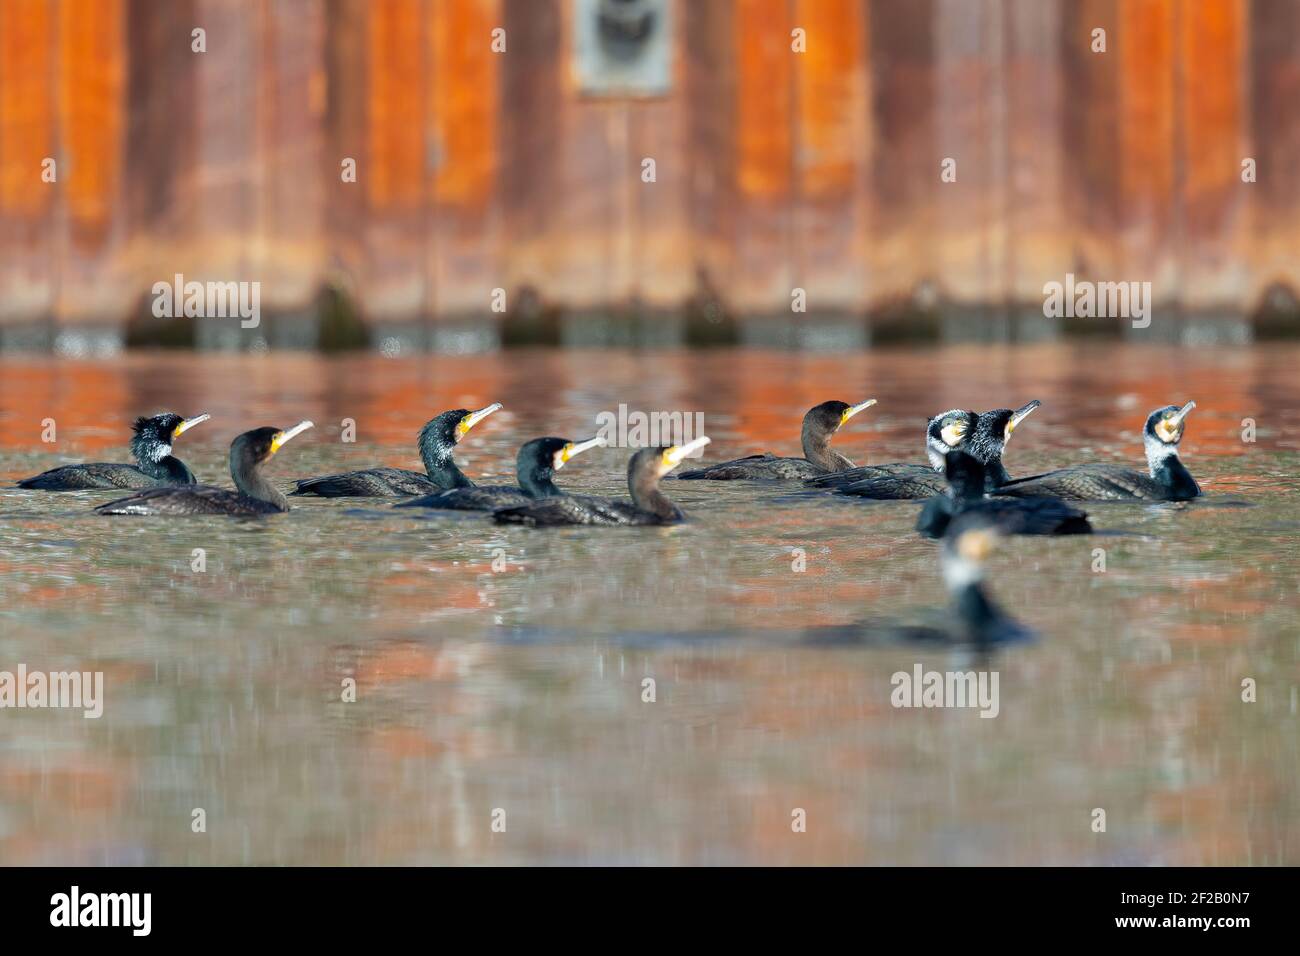 Un grand groupe de grands cormorans (Phalacrocorax carbo) nageant et pêchant dans un lac. Banque D'Images